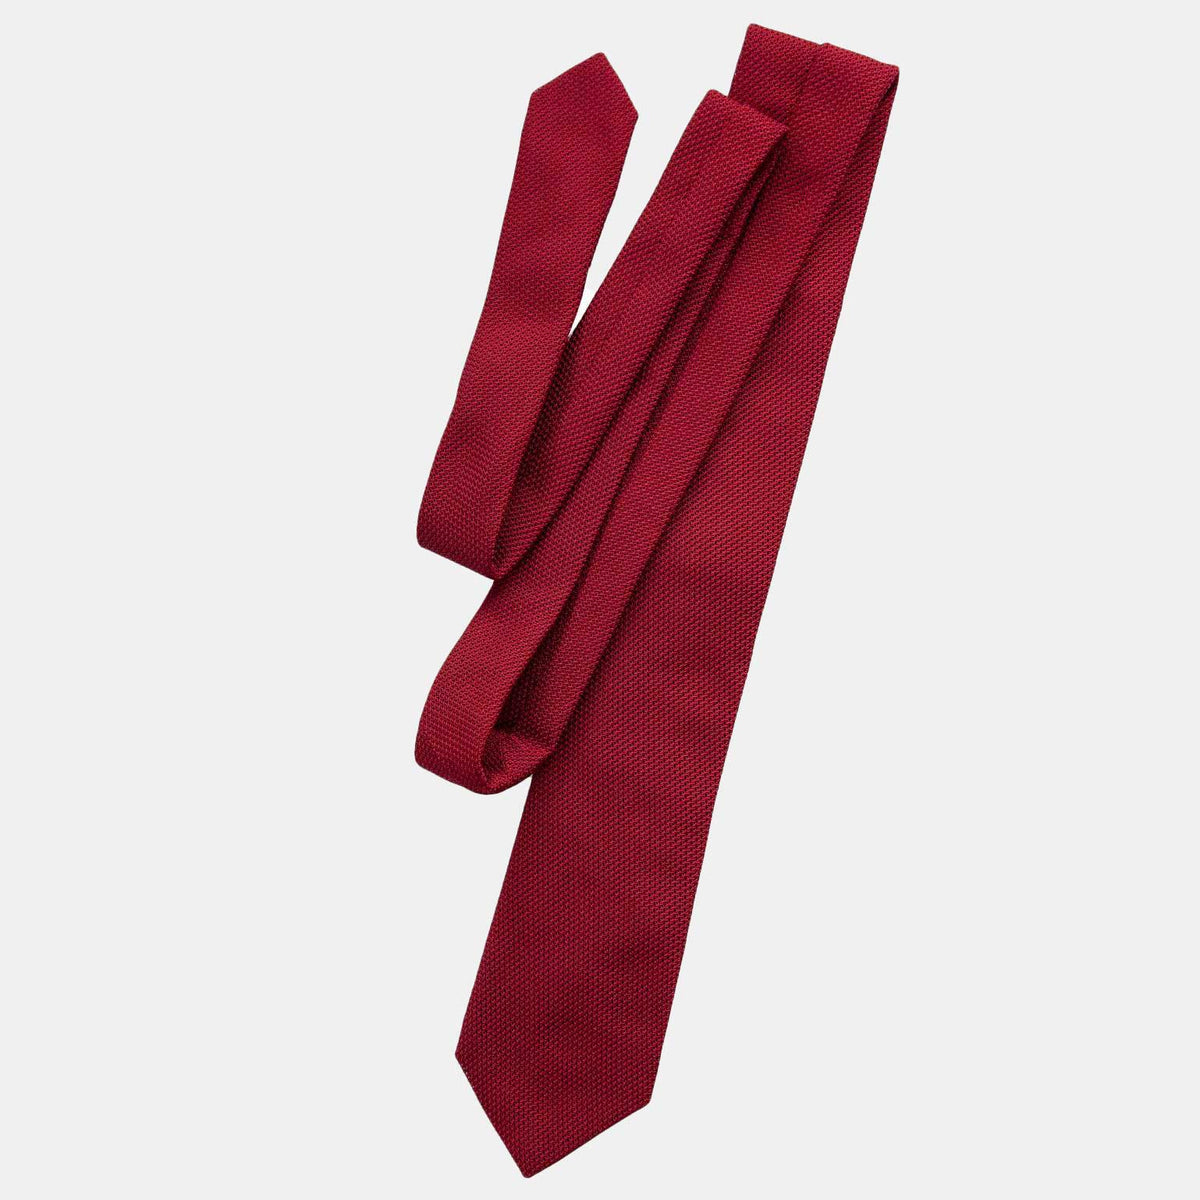 Extra long grenadine necktie